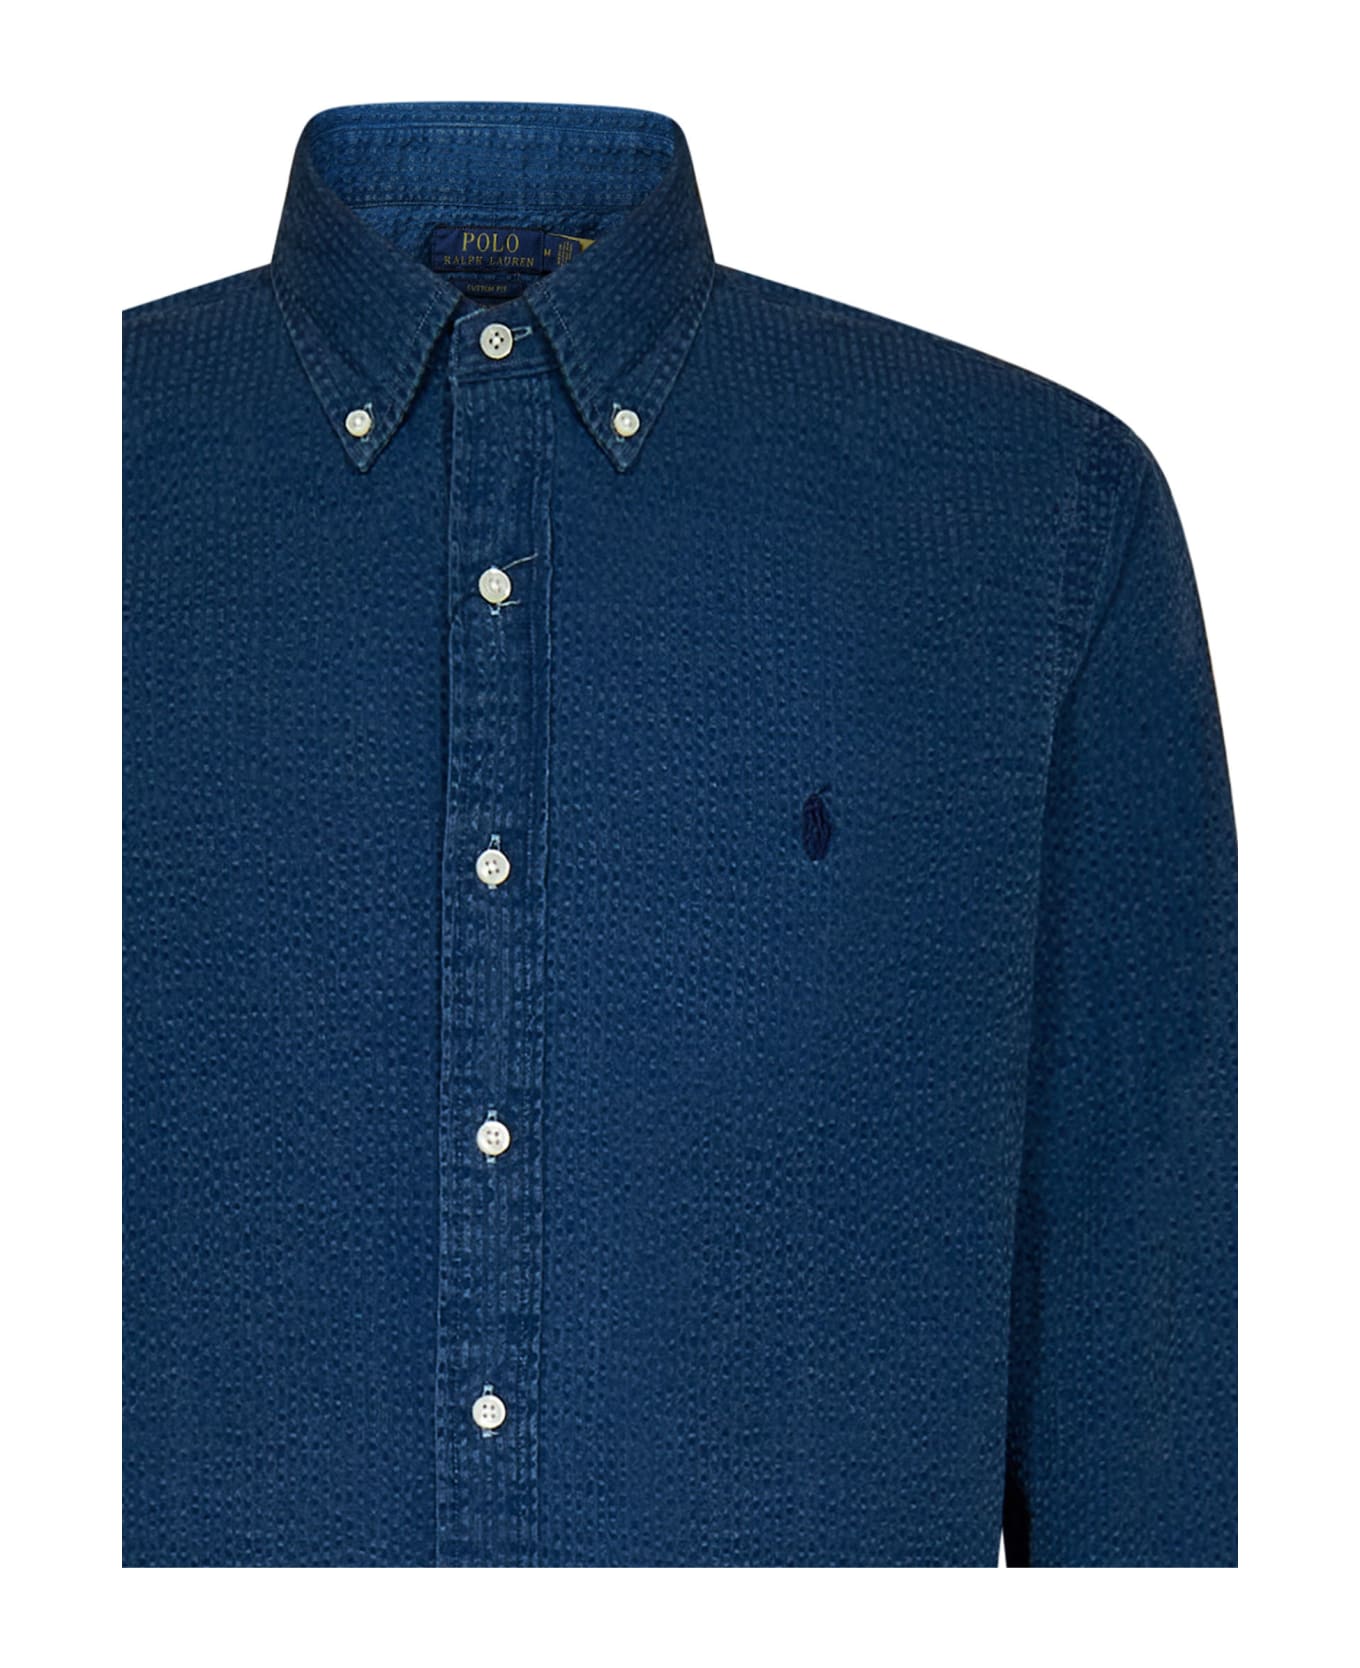 Polo Ralph Lauren Shirt Polo Ralph Lauren - BLUE シャツ